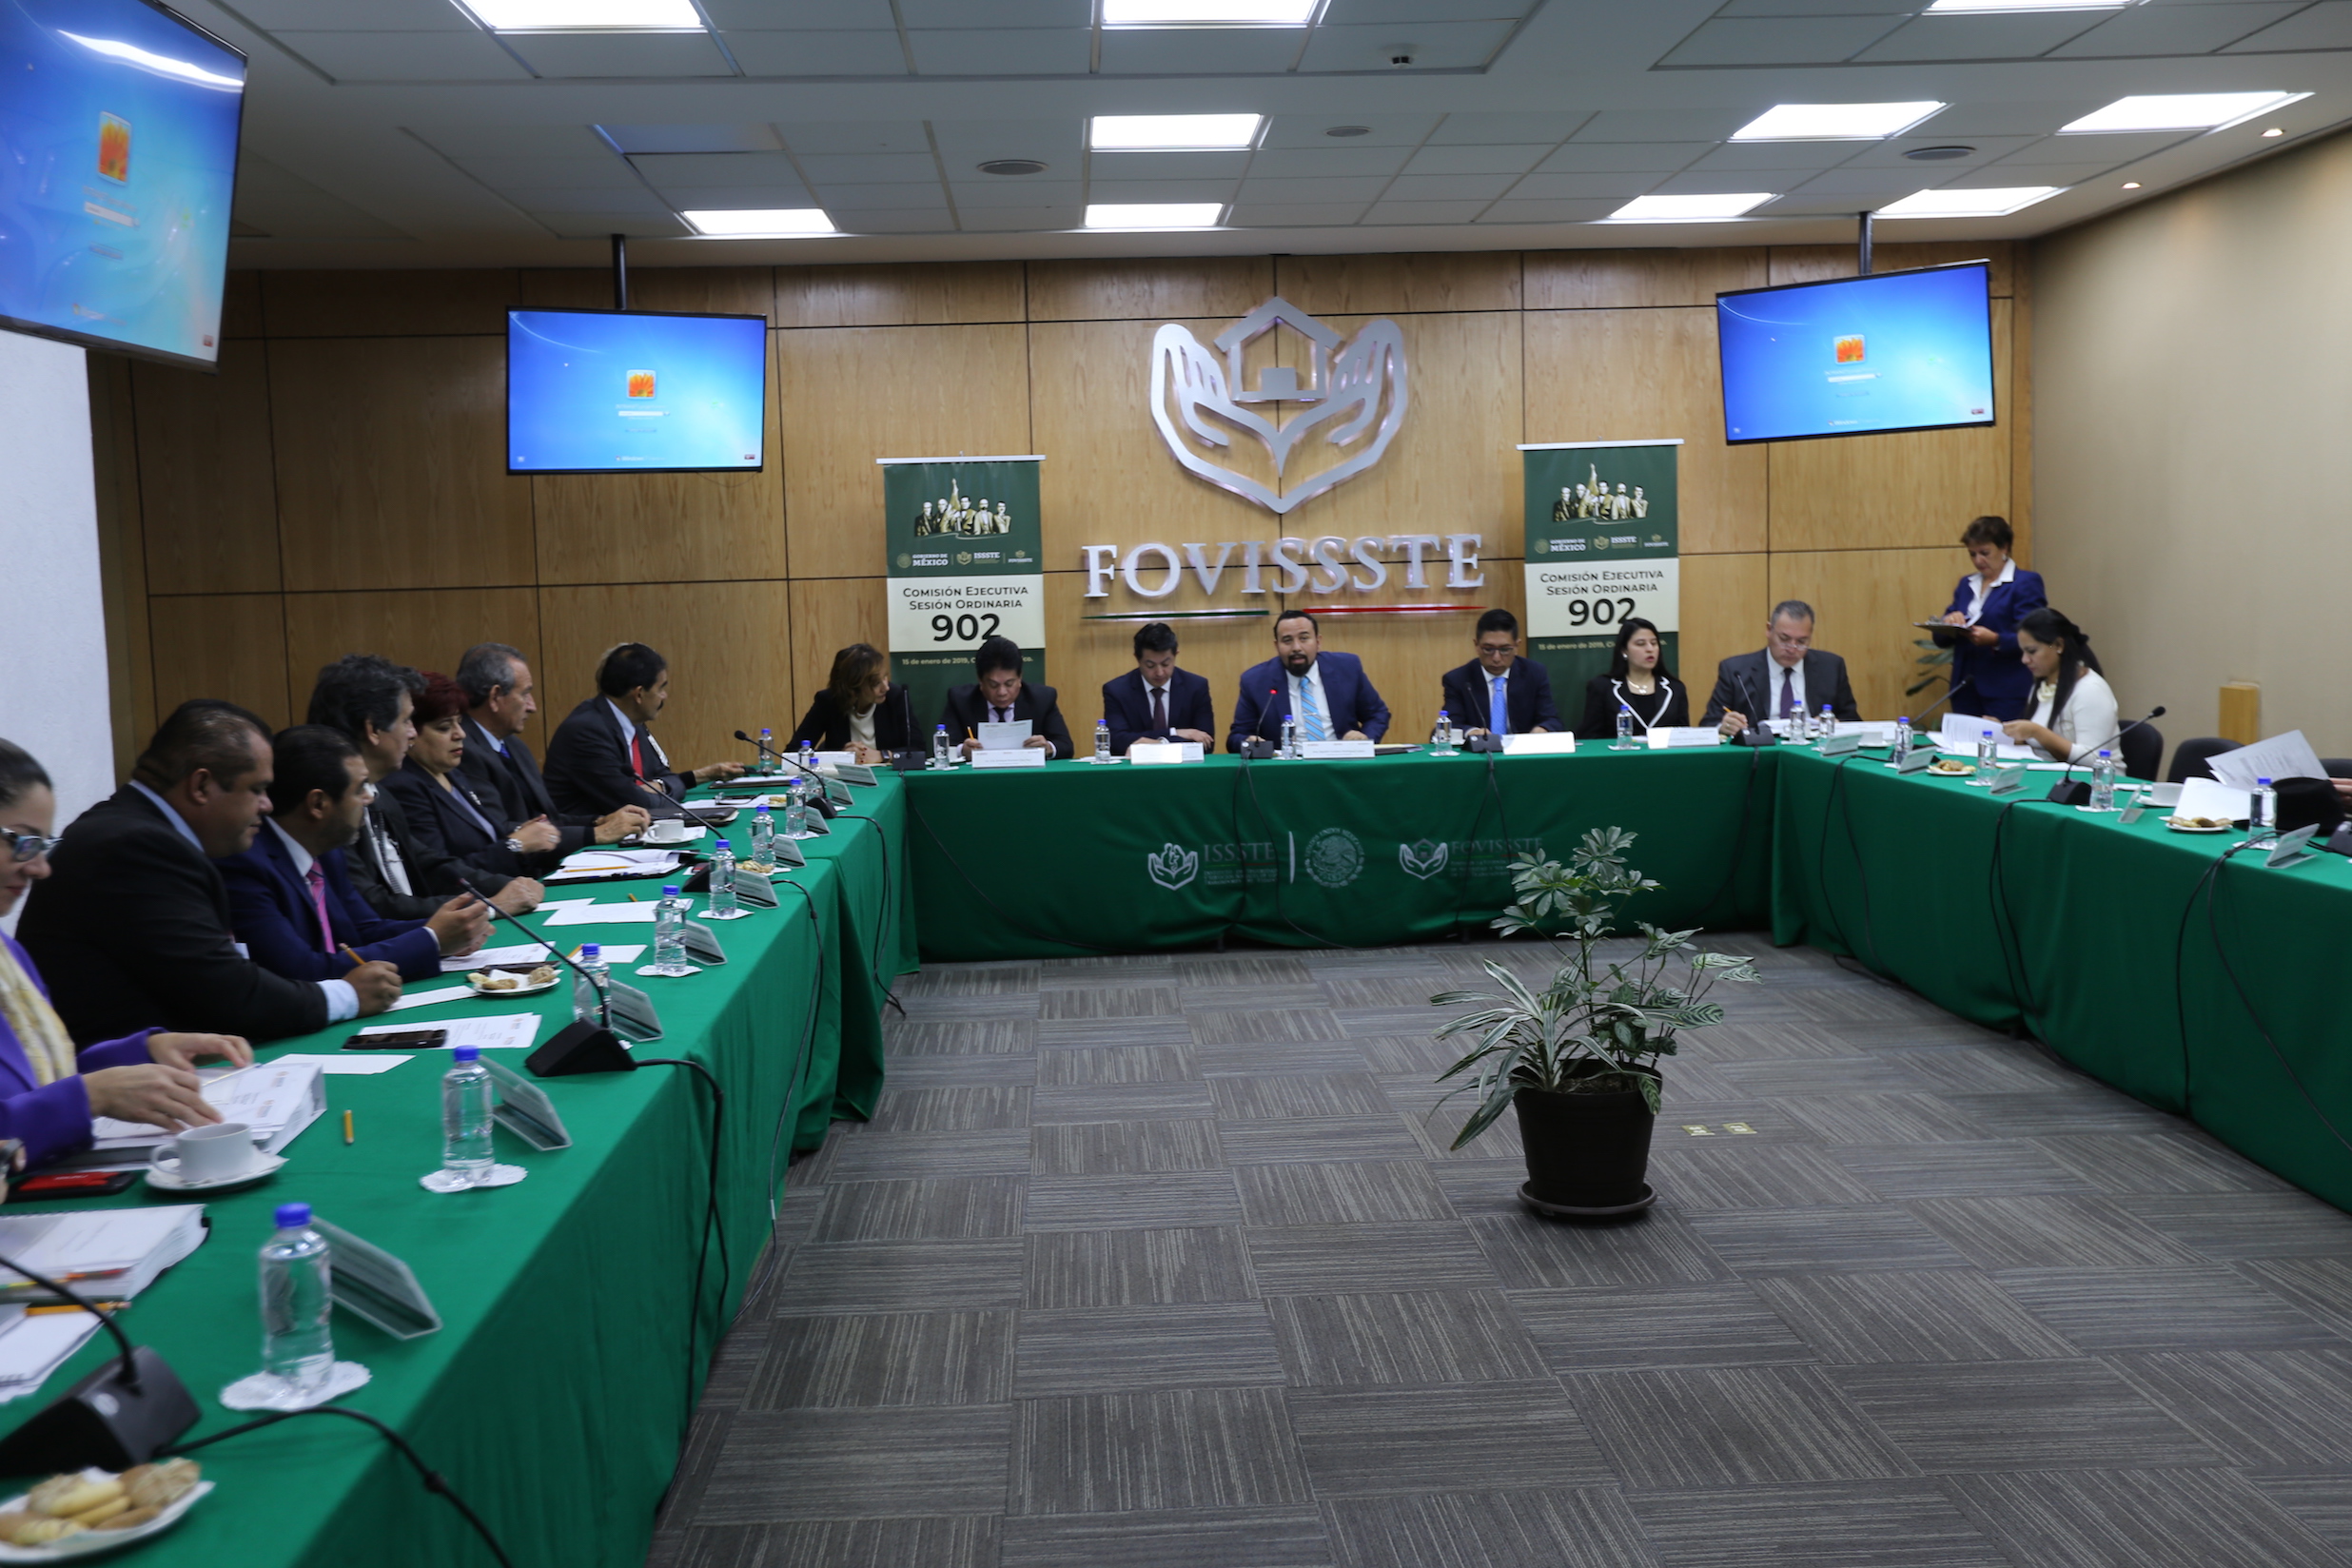 Encabeza el Vocal Ejecutivo del Fovissste Agustín Rodriguez López la comisión ejecutiva número 902